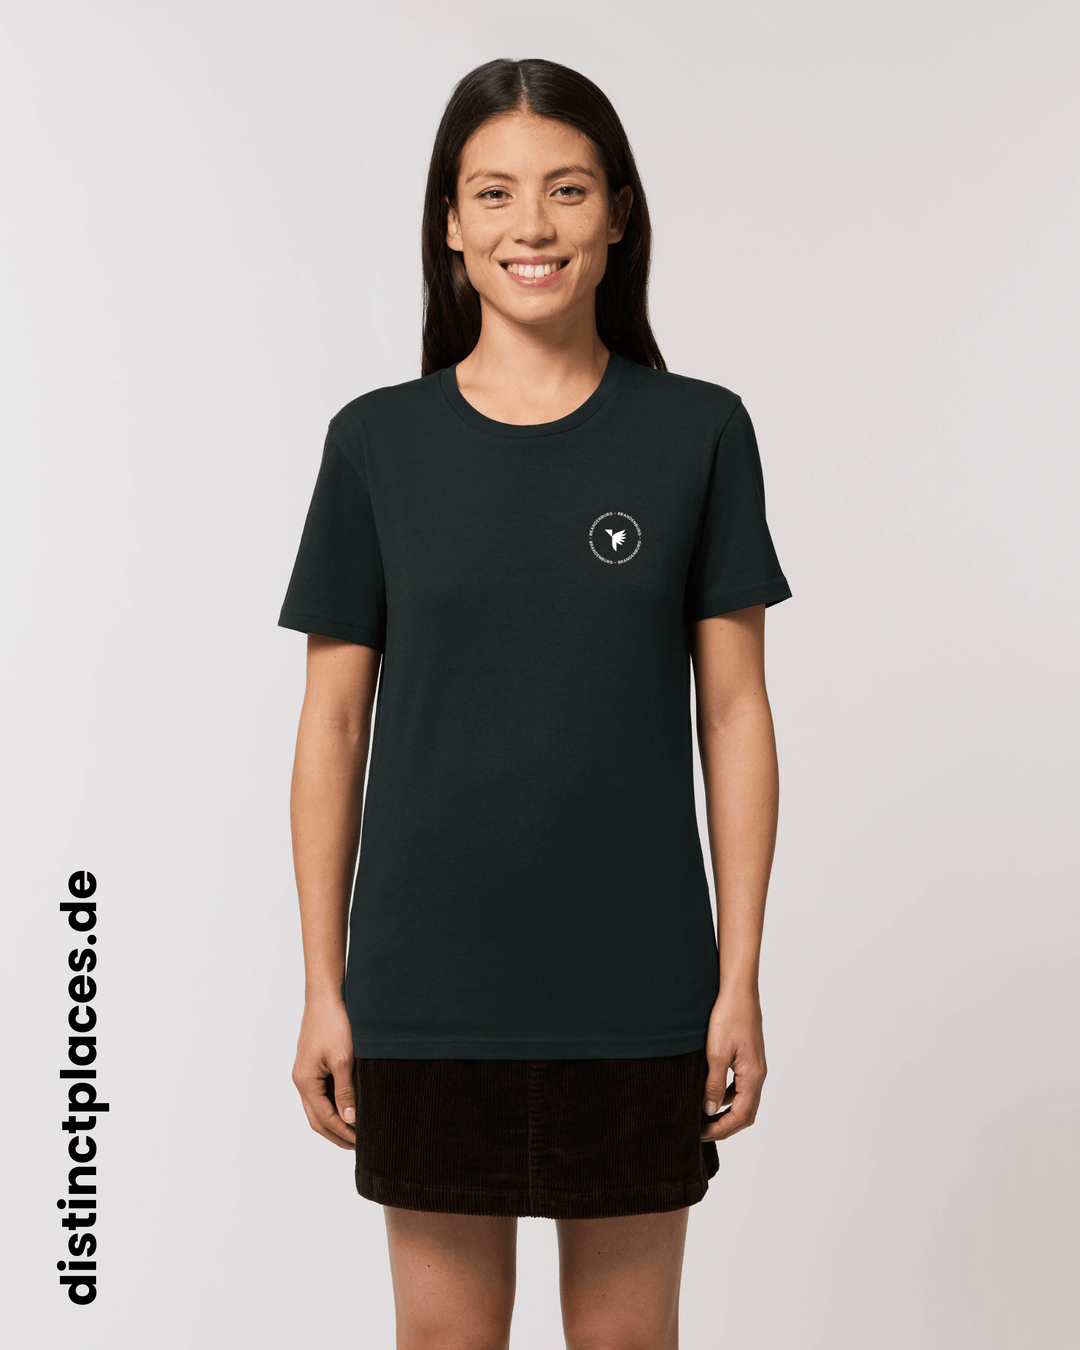 Frau von vorne trägt schwarzes fairtrade, vegan und bio-baumwoll T-Shirt mit einem minimalistischem weißen Logo, beziehungsweise Wappen und Schriftzug für Brandenburg